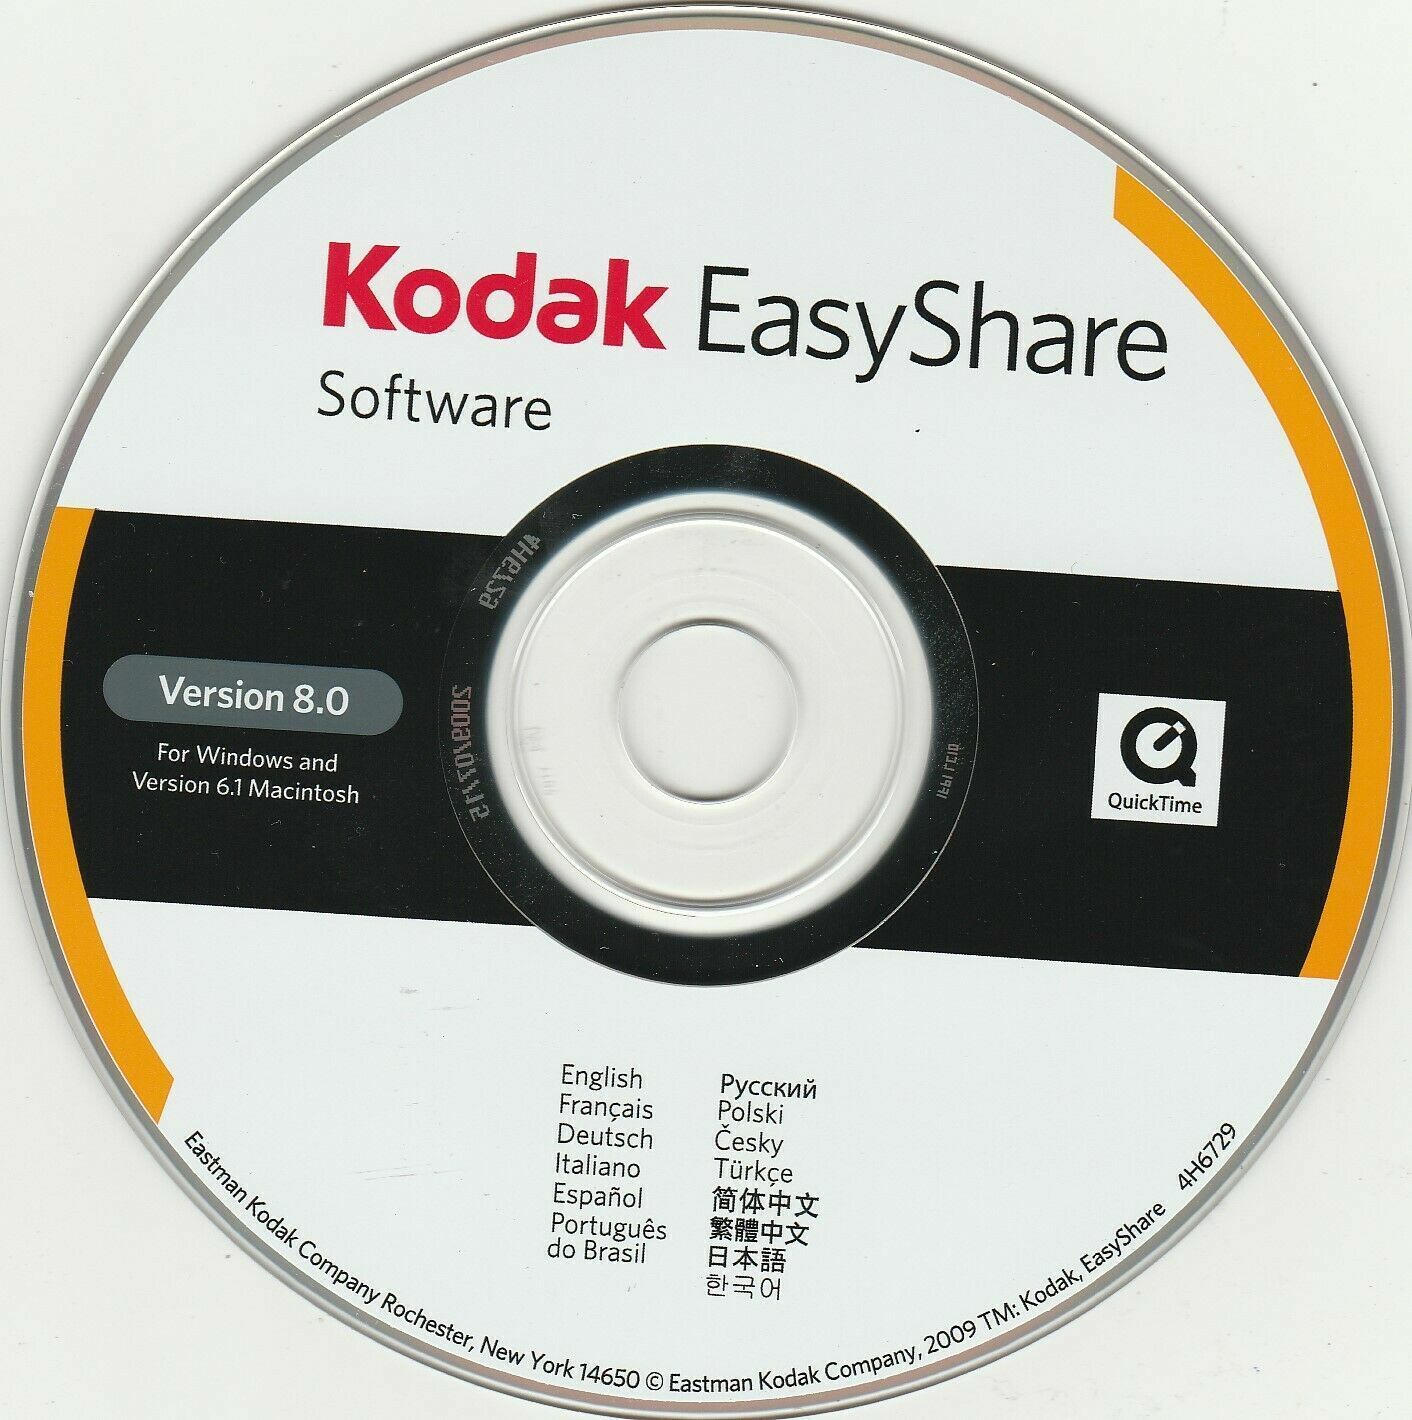 Kodak EasyShare Software for Windows Ver. 8.0